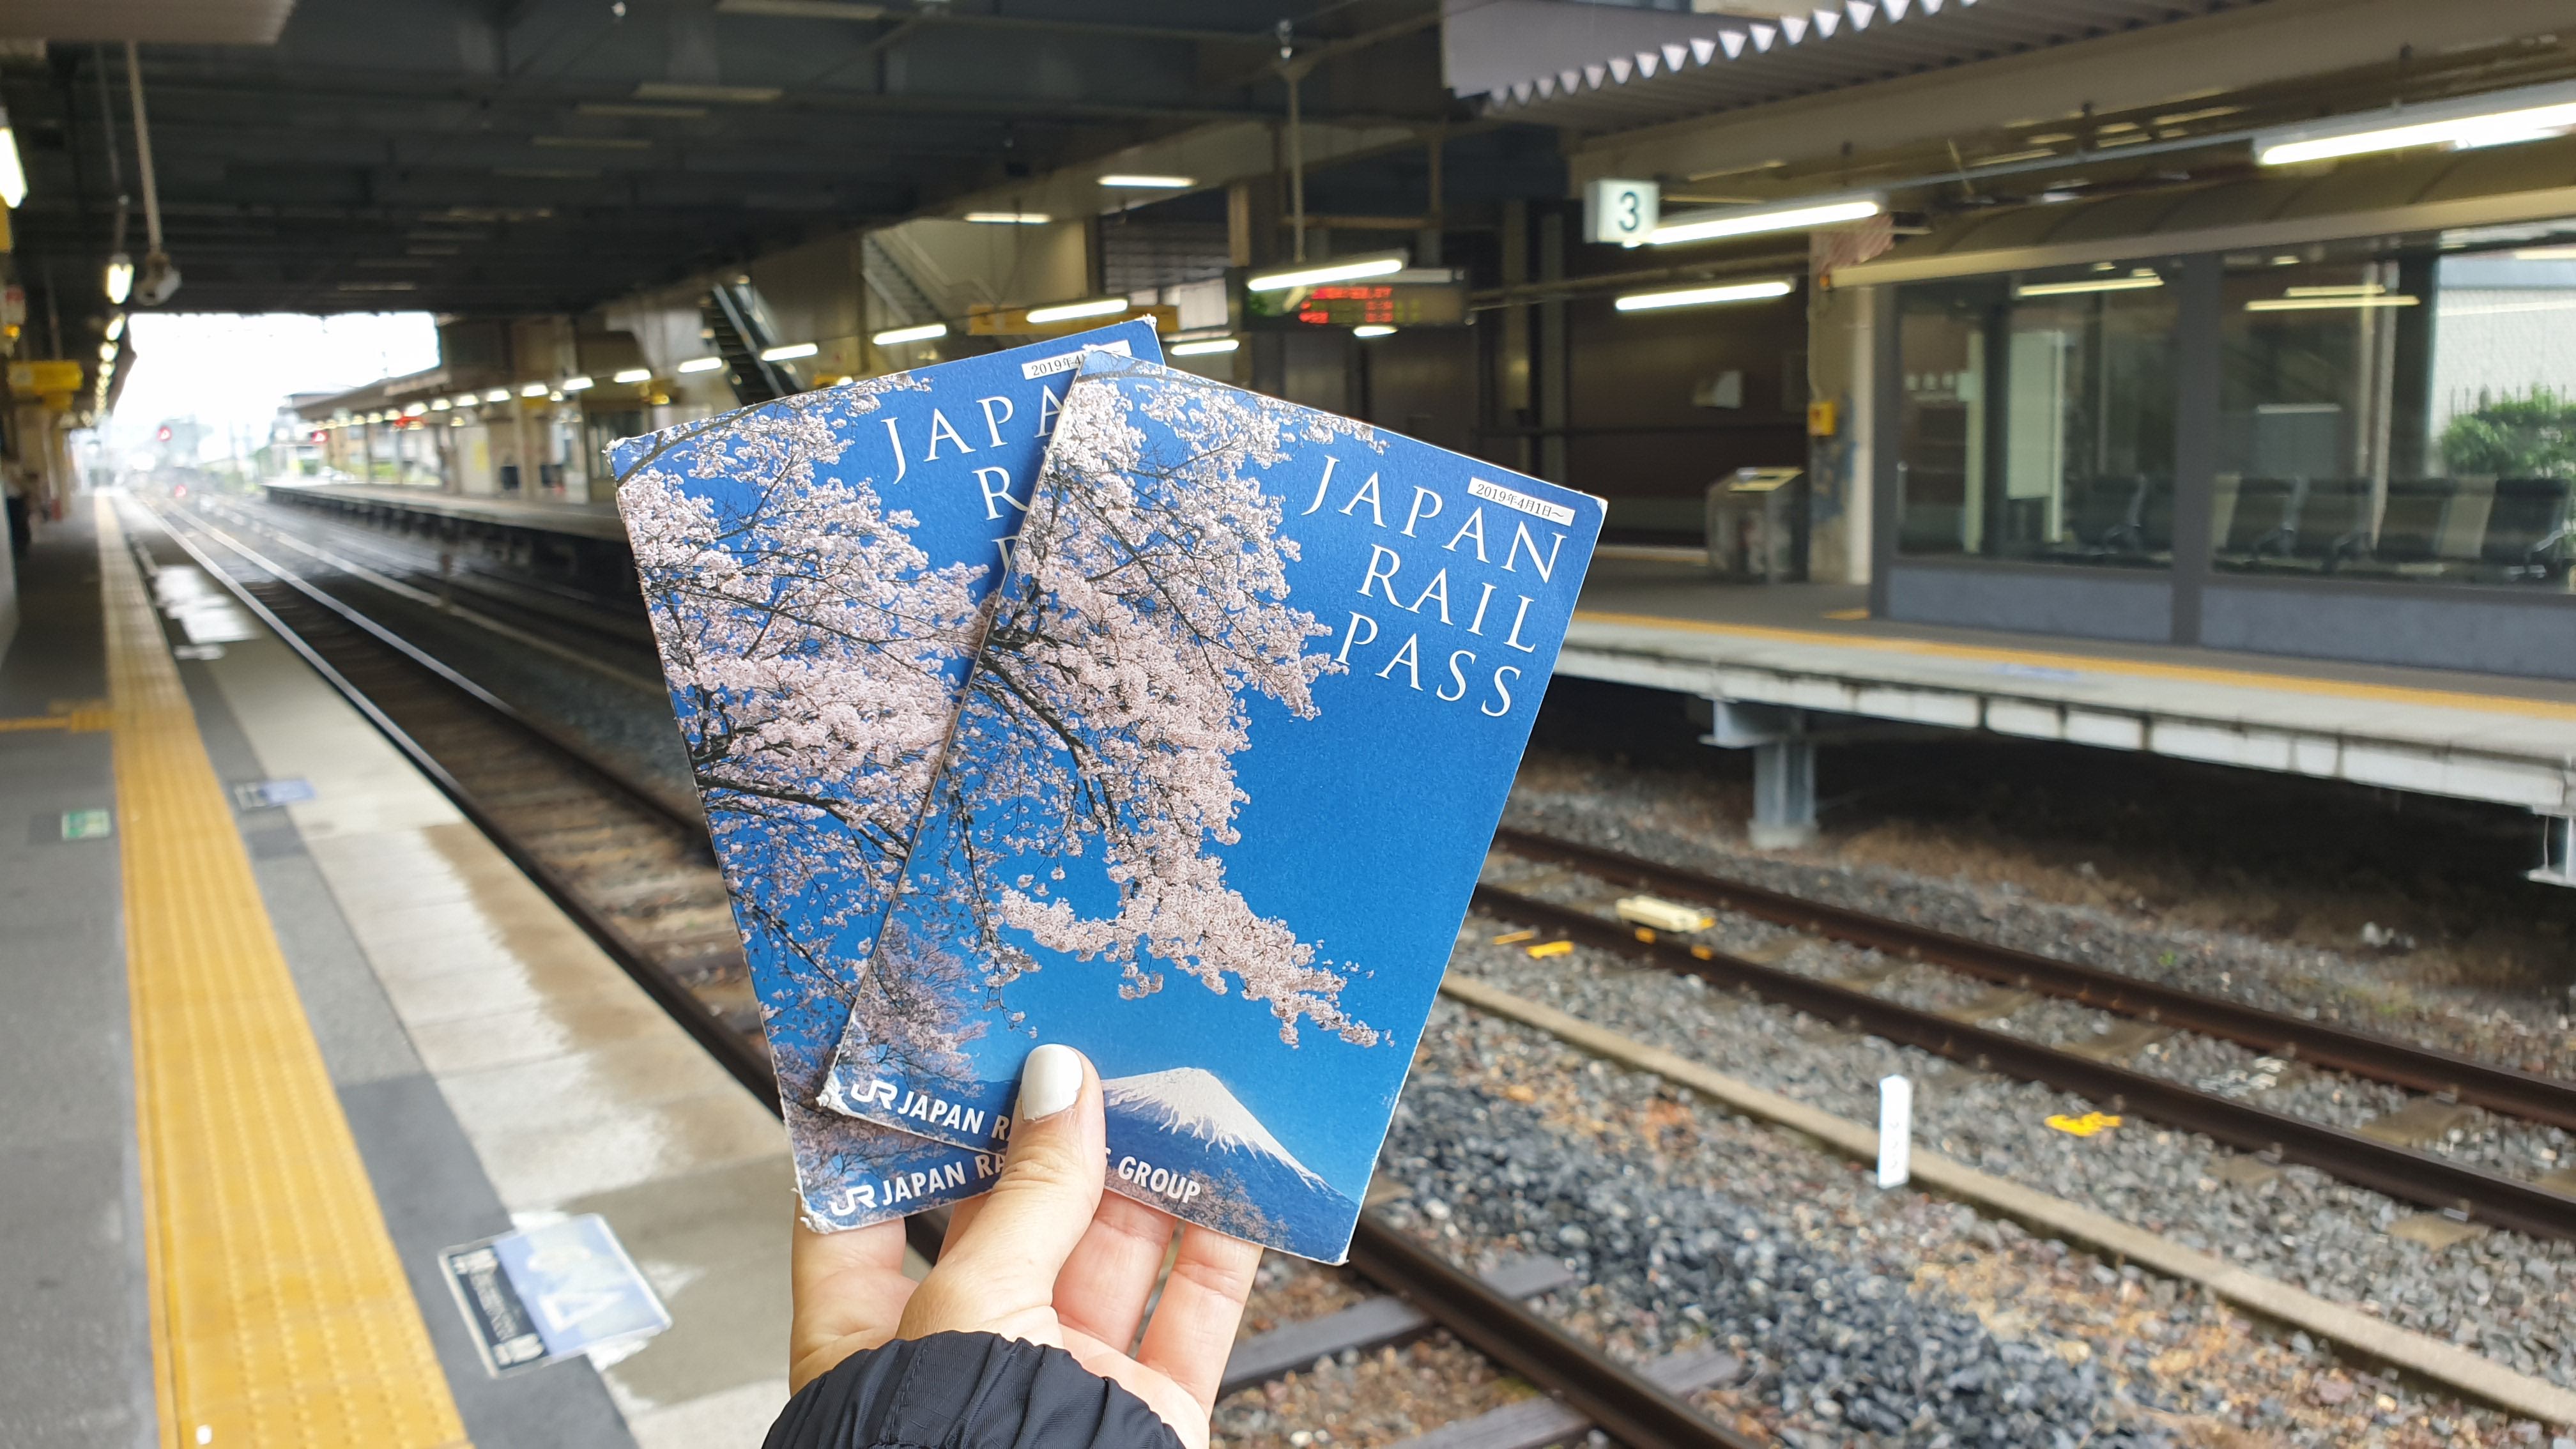 Consejos para viajar a Japón, Japan Rail Pass